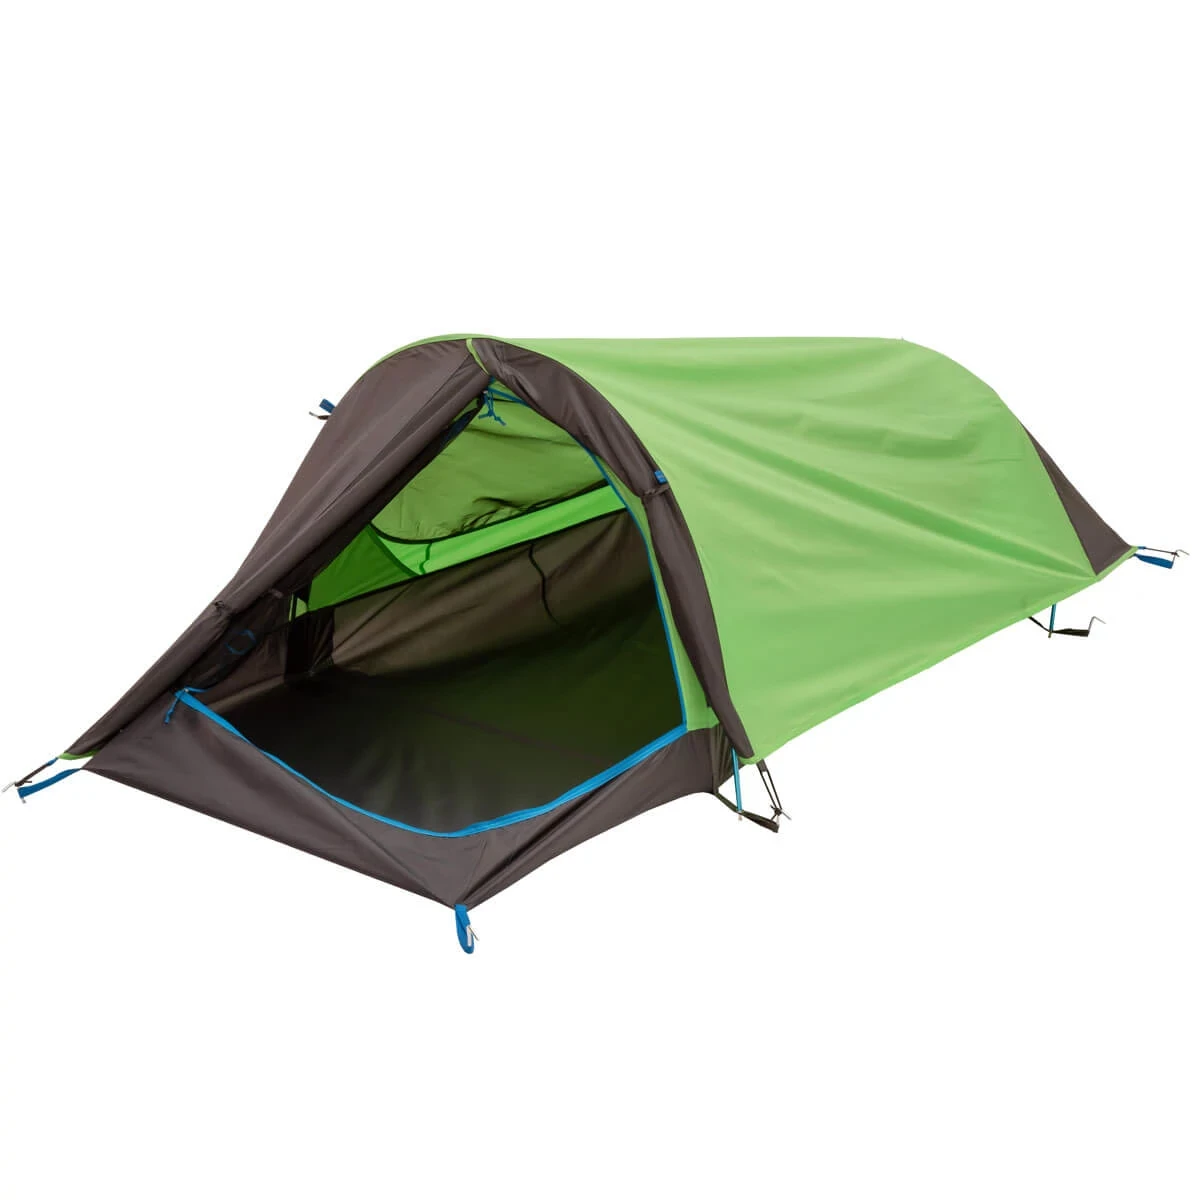 Solitaire AL solo tent with rainfly door open